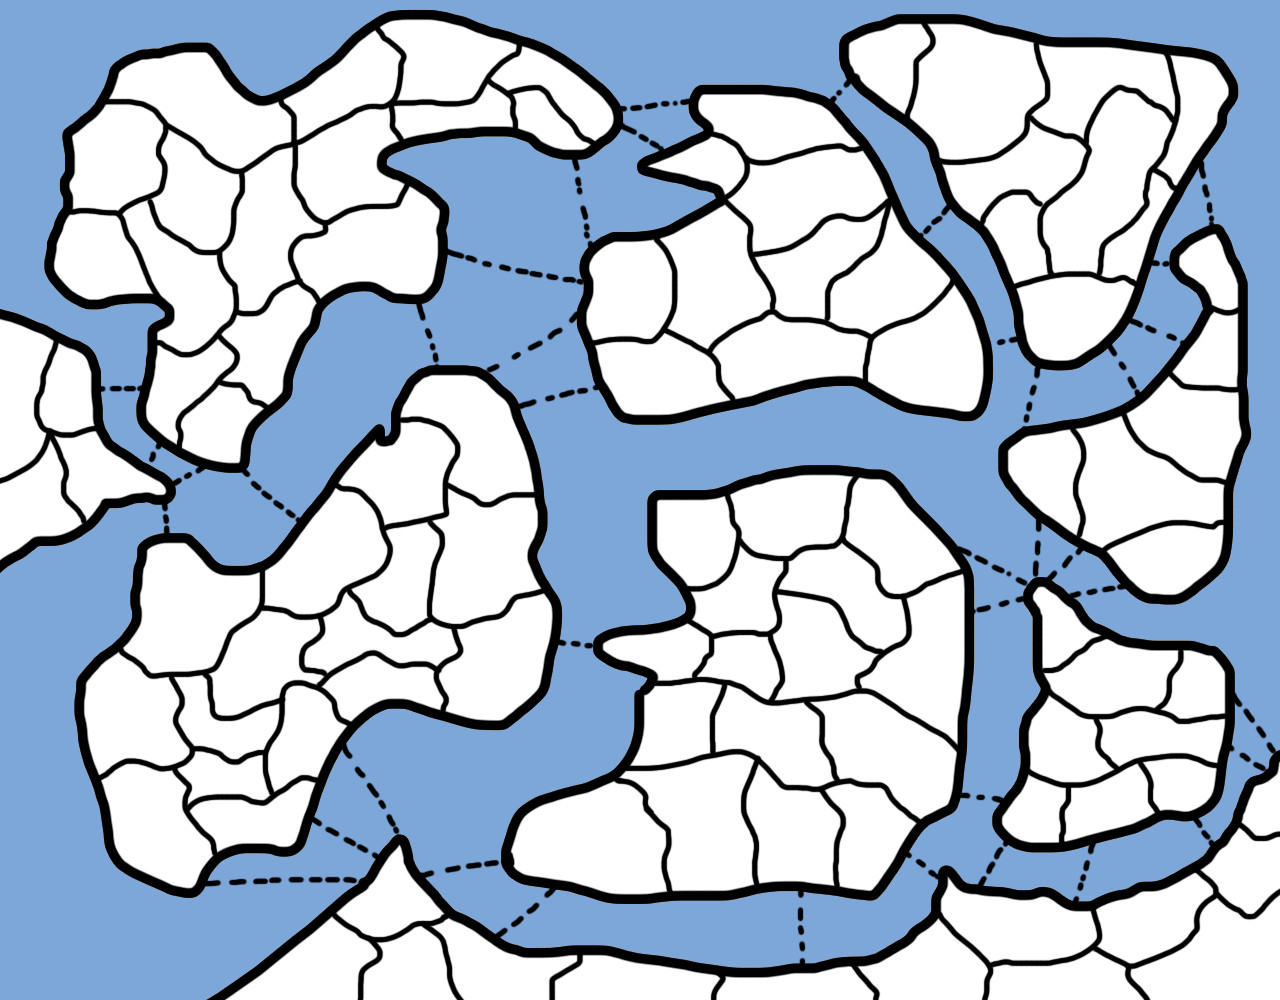 war-of-rd-map8 (1).jpg